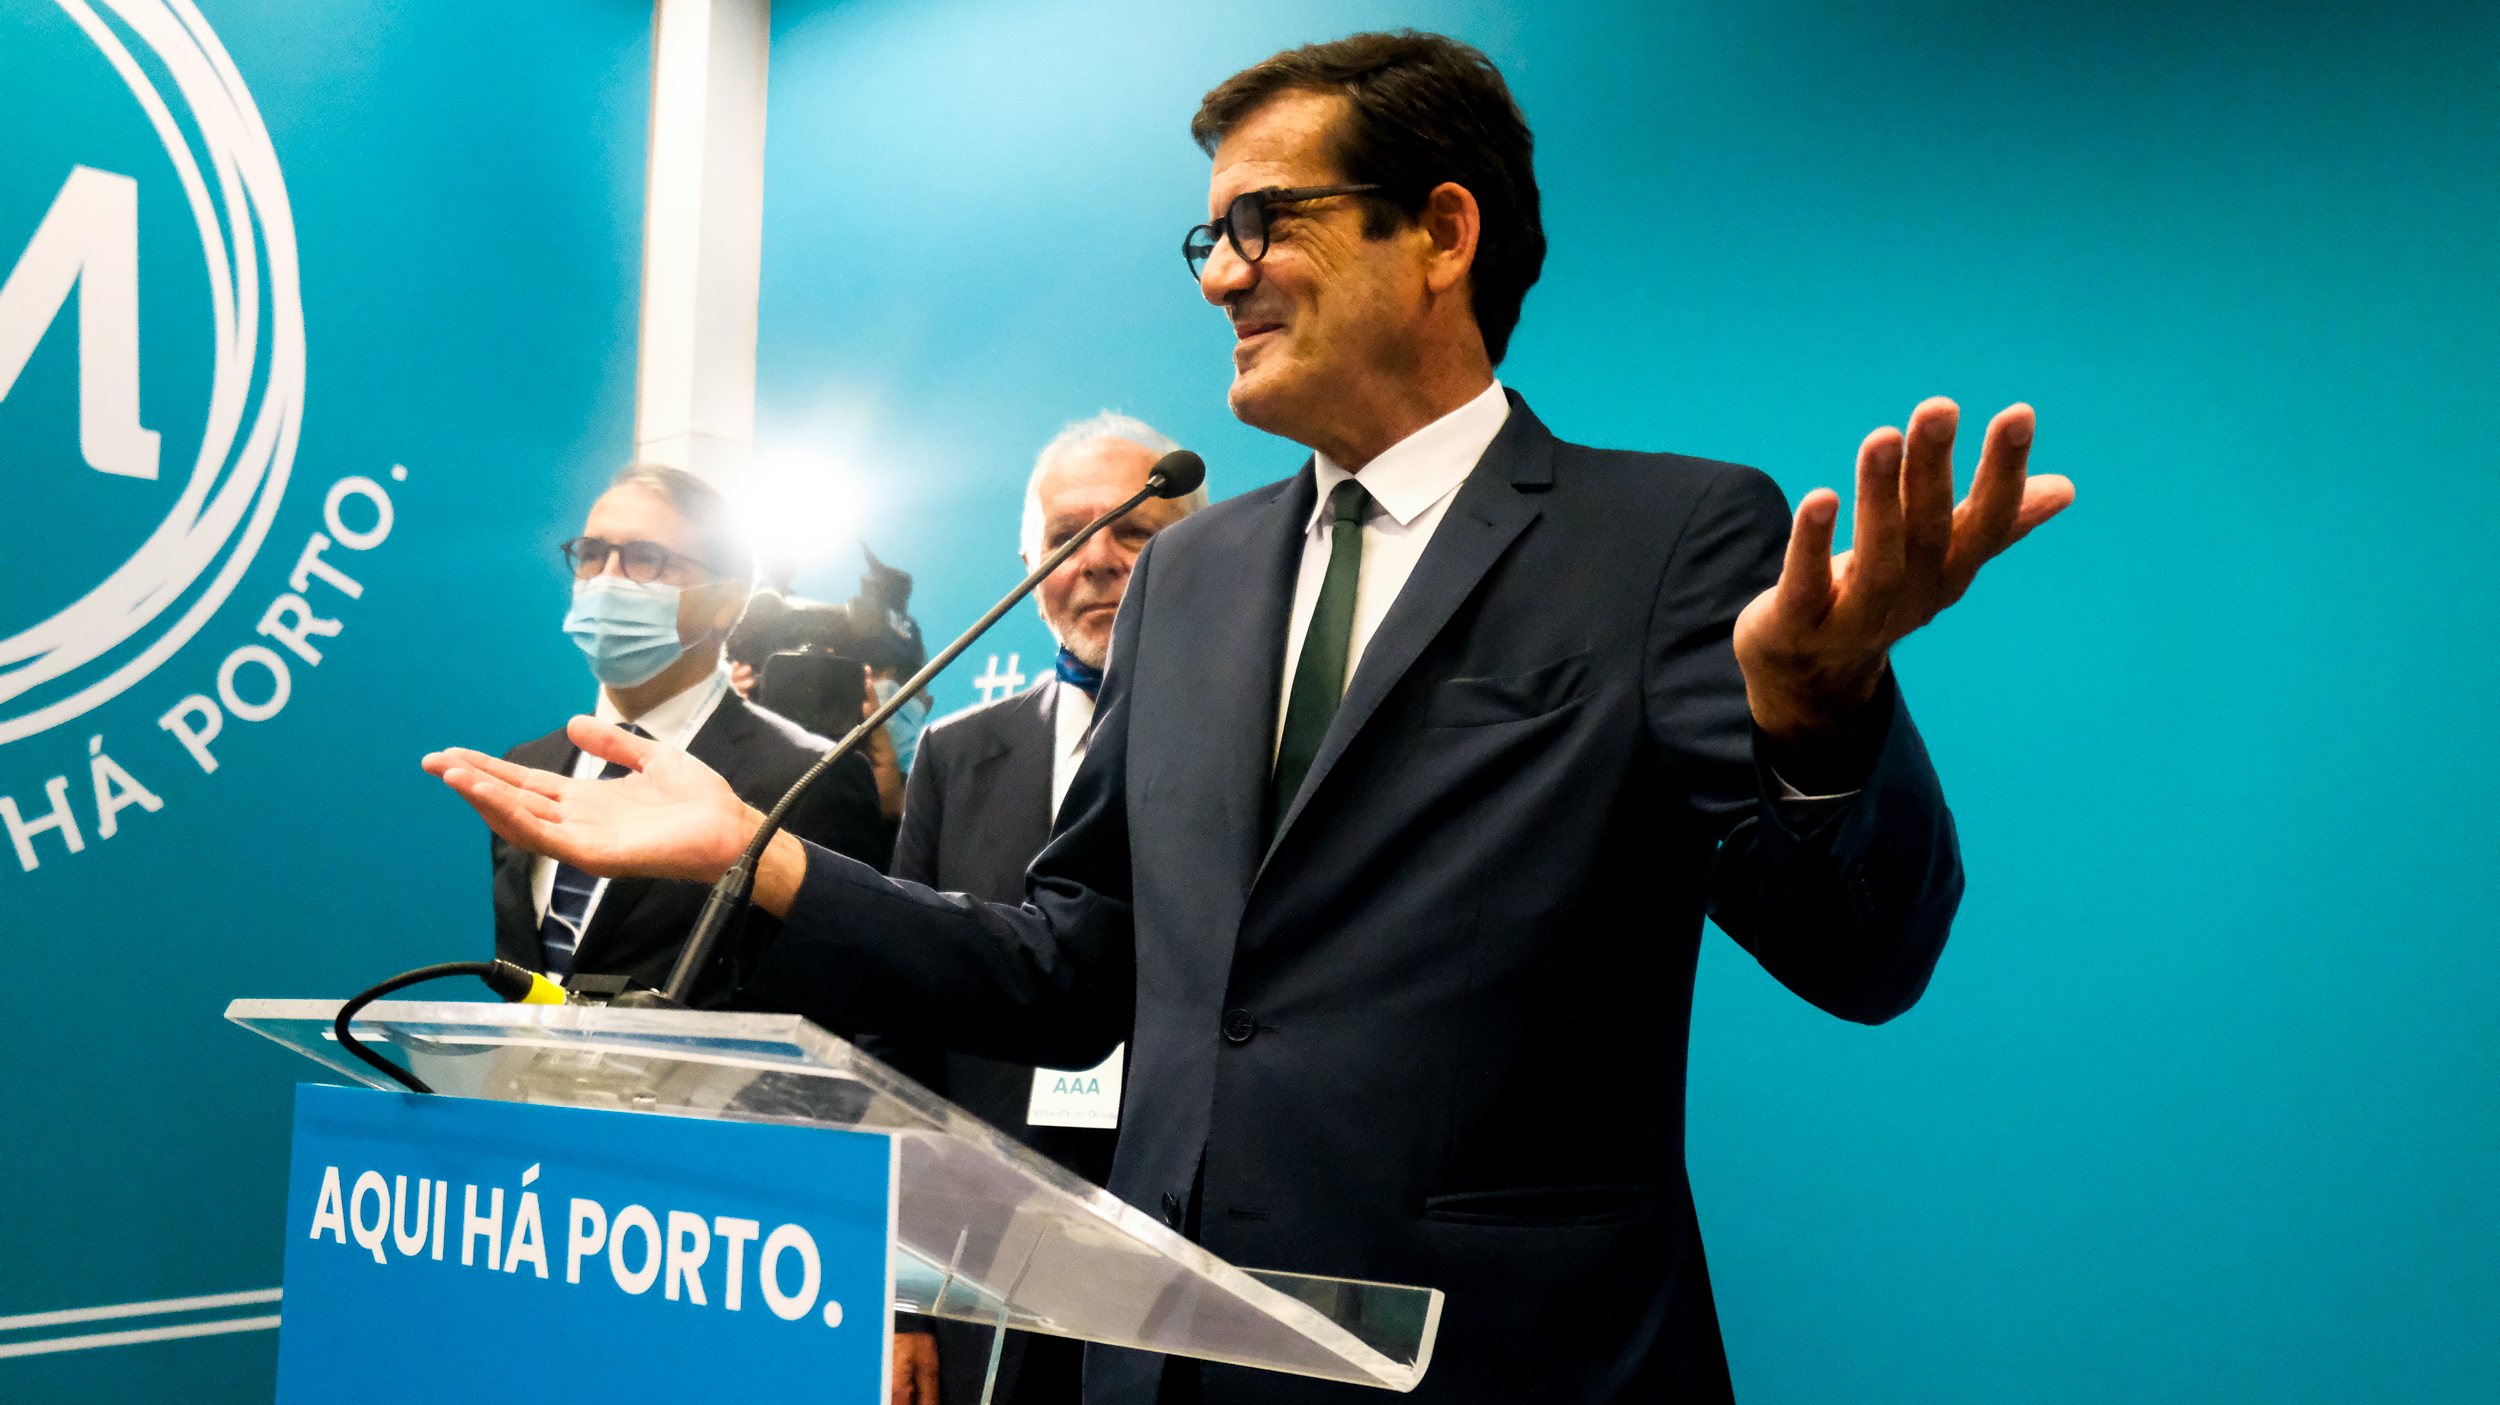 O movimento independente Rui Moreira: Aqui Há Porto! obteve 40,72% dos votos